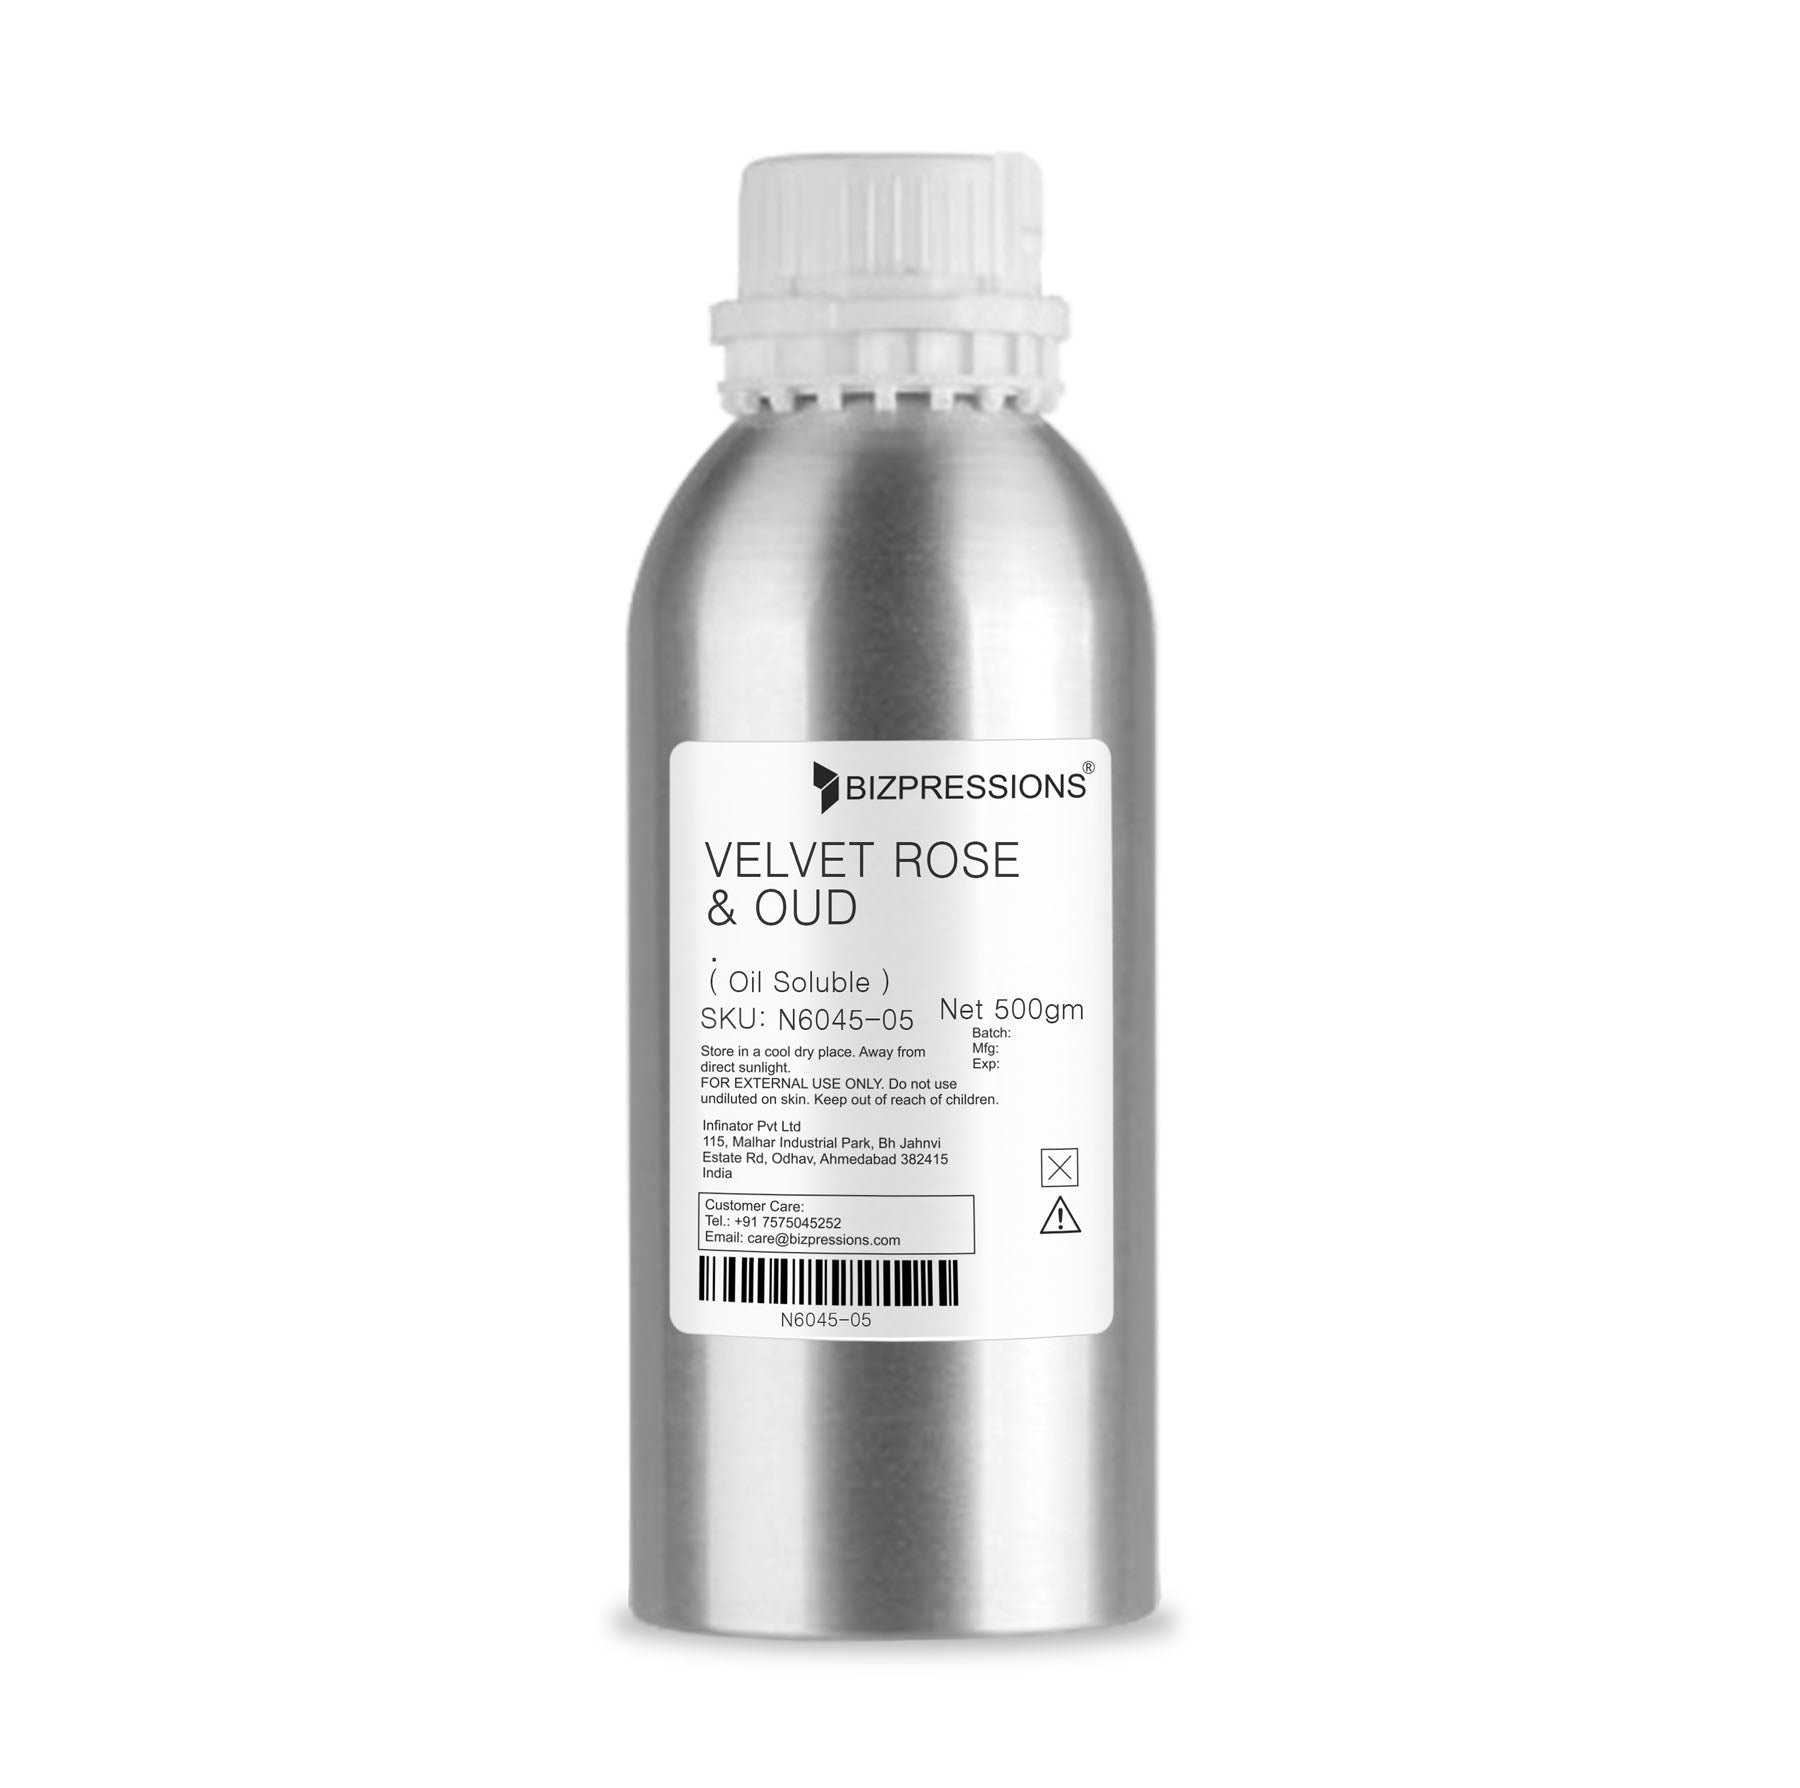 VELVET ROSE & OUD - Fragrance ( Oil Soluble ) - 500 gm